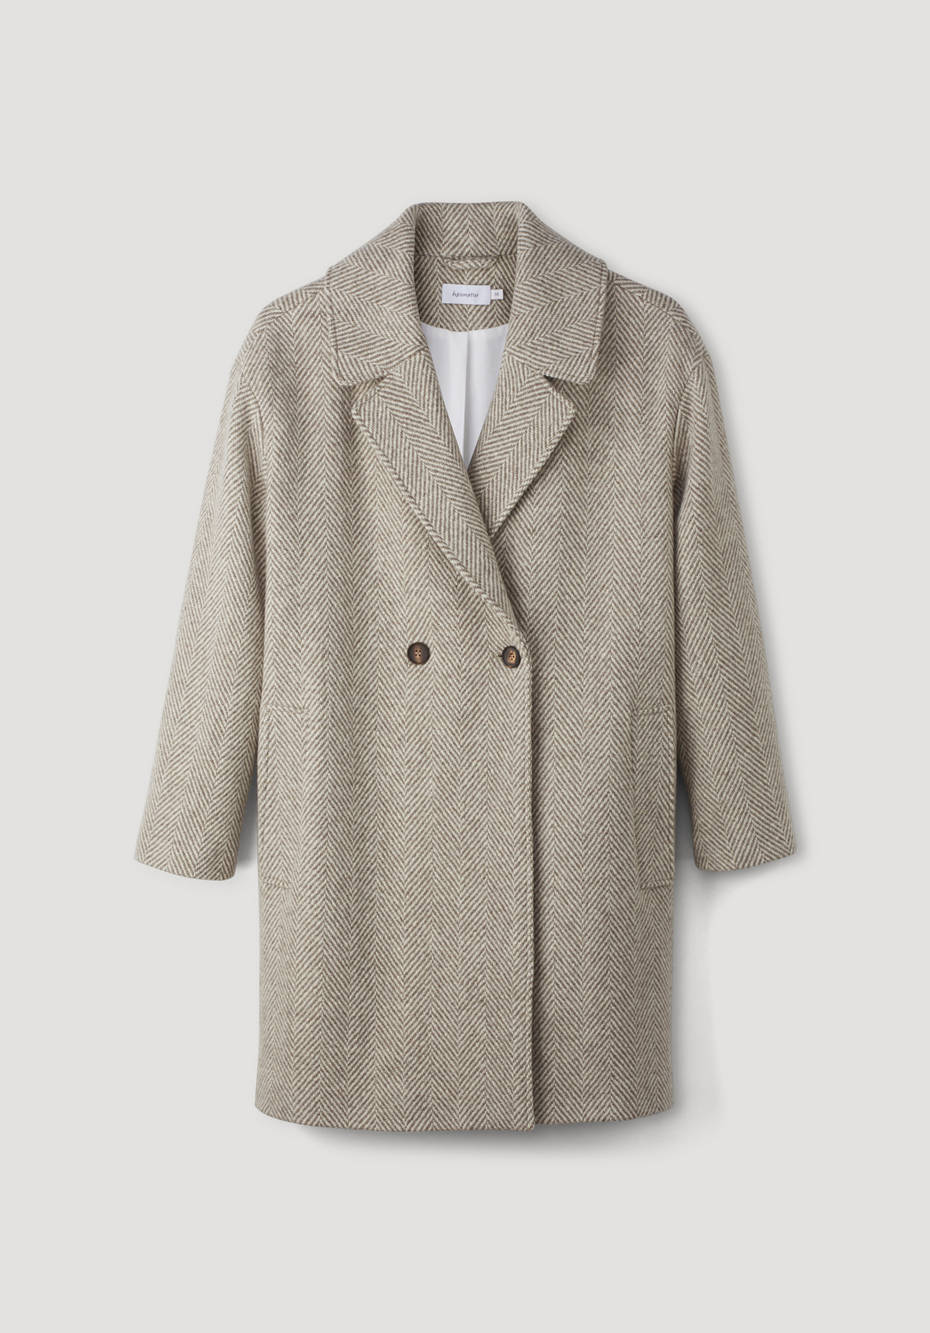 Herringbone coat made from pure merino wool